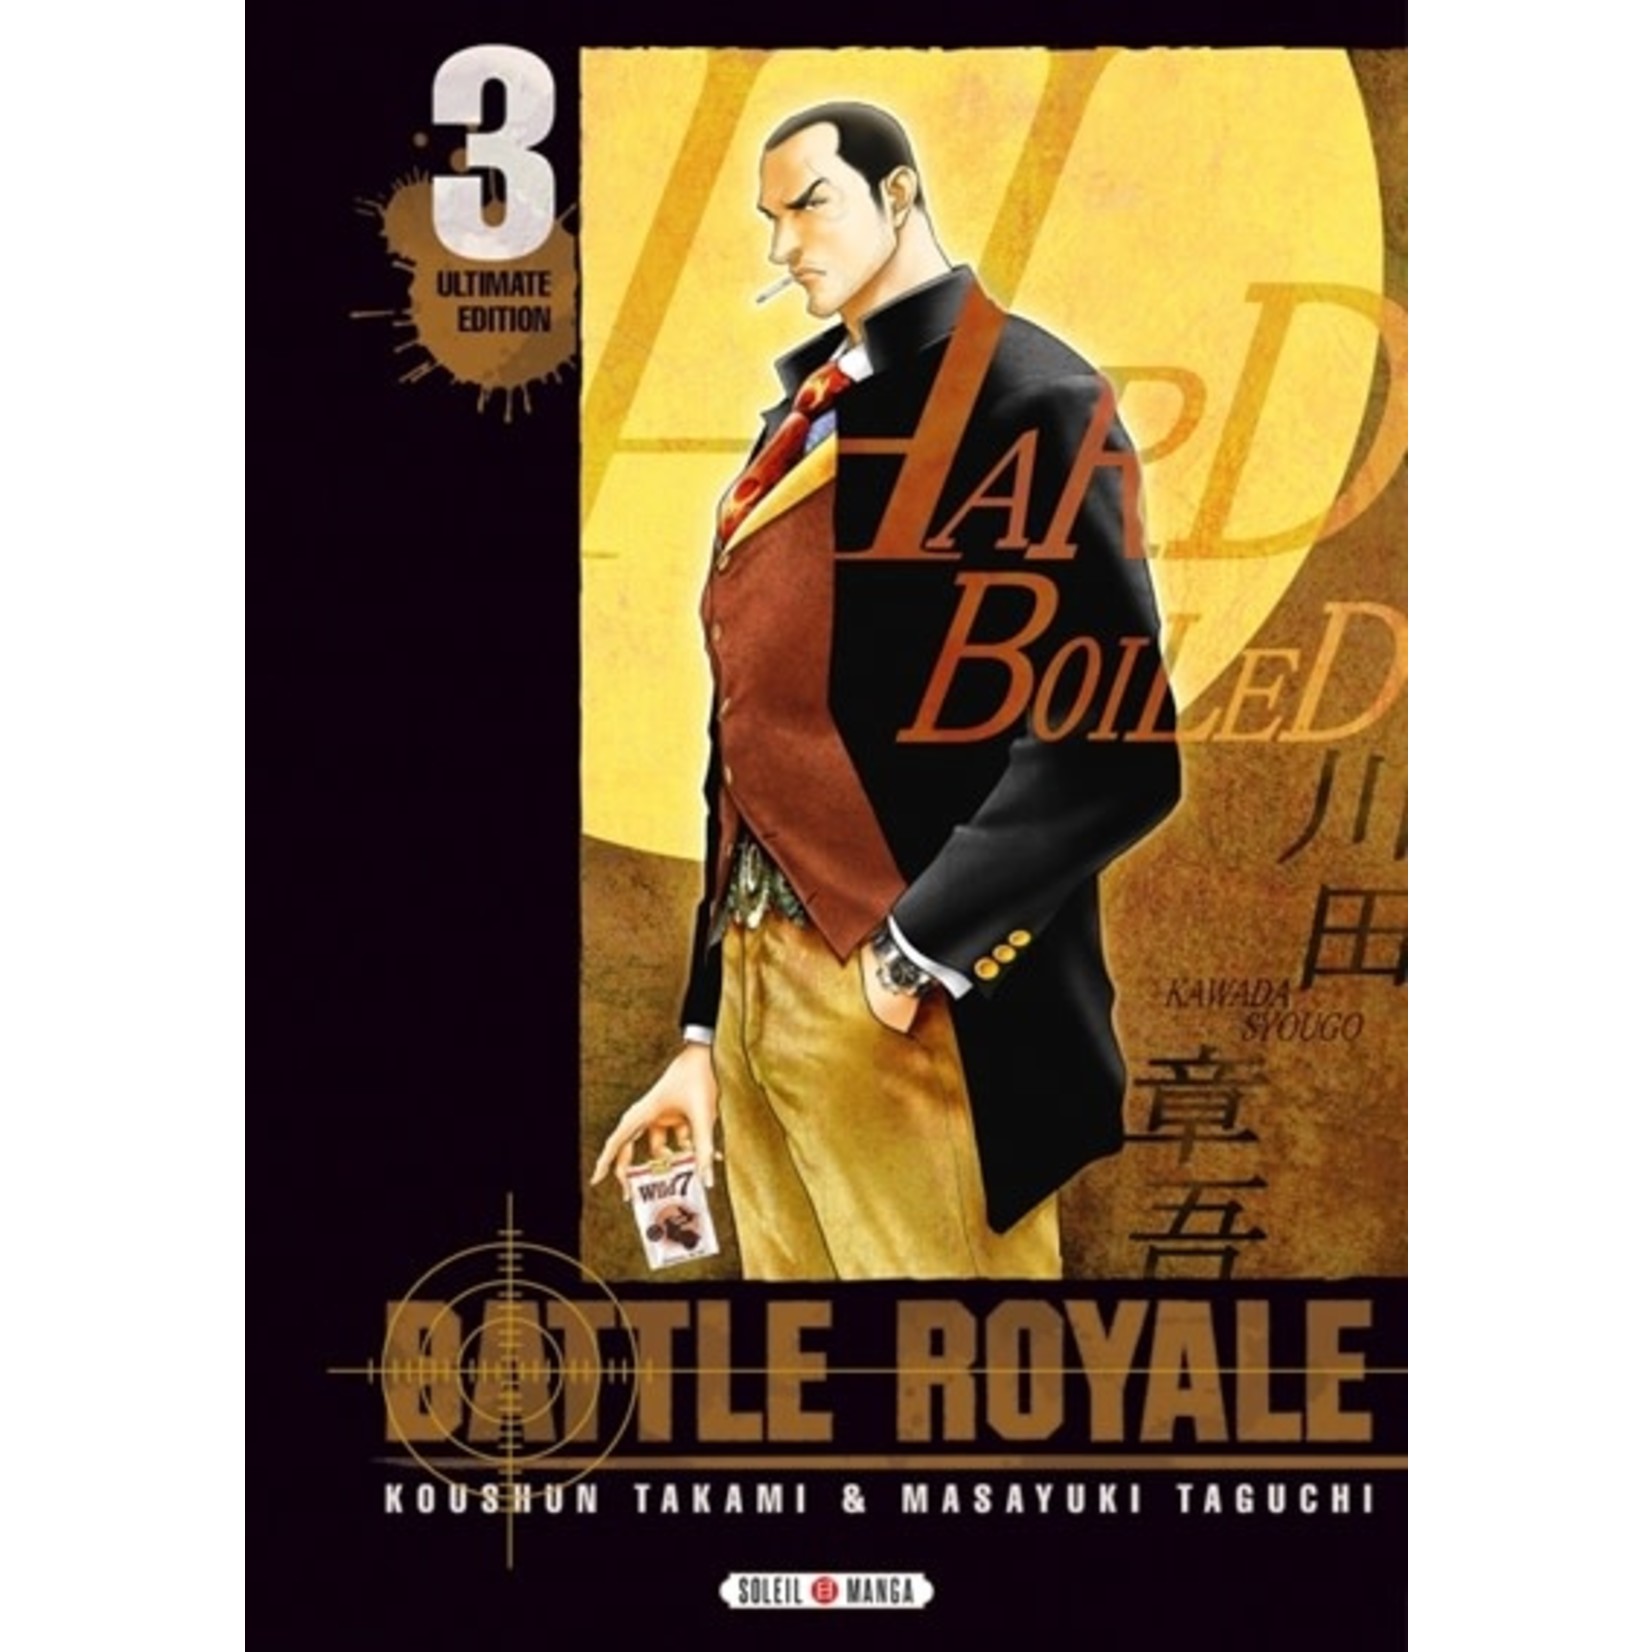 0-Soleil Battle Royale  Ed Double